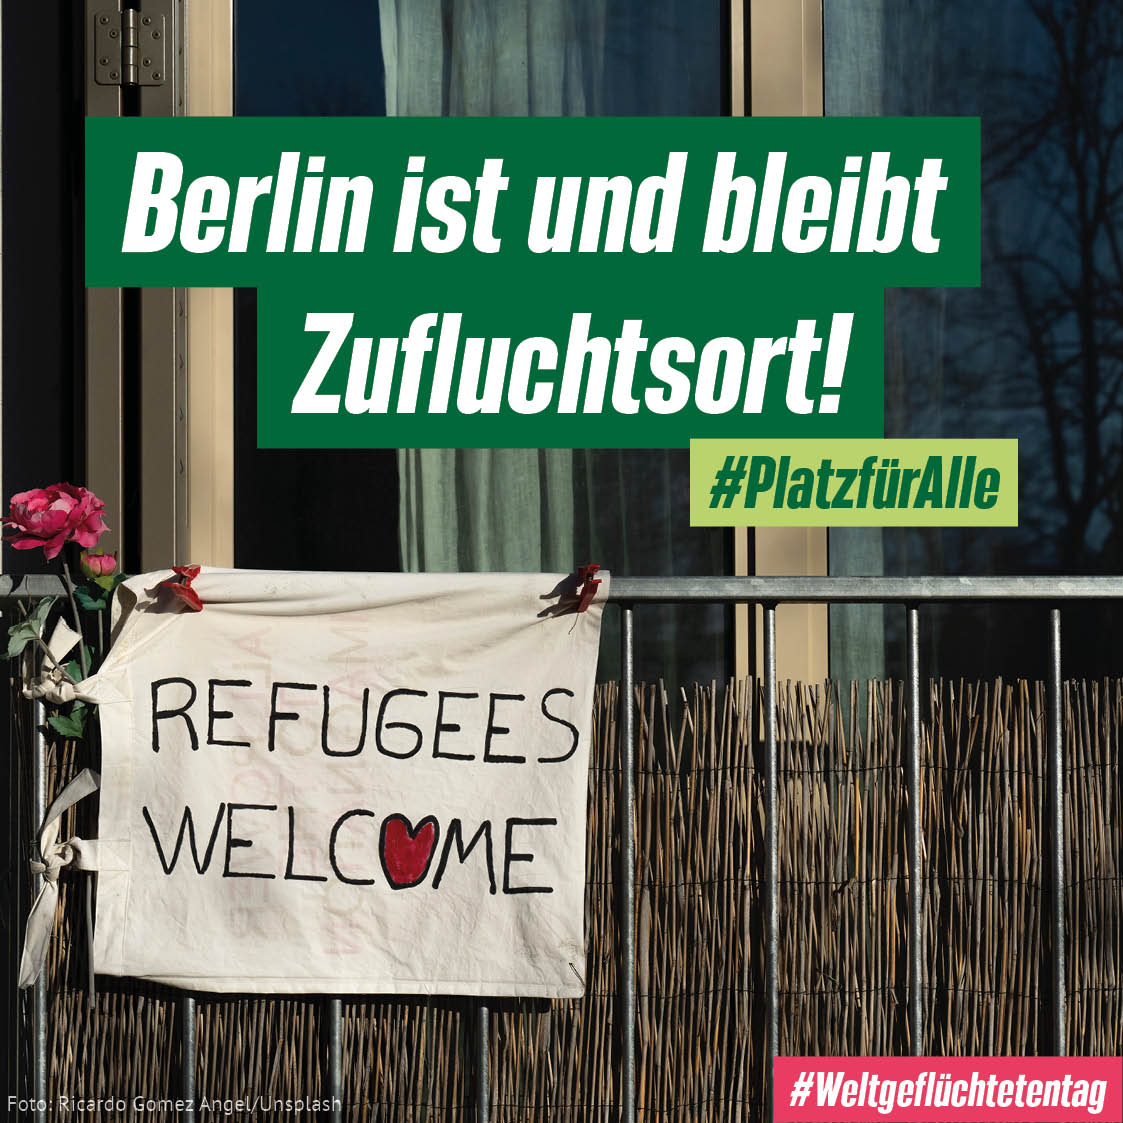 Berlin hat #PlatzfürAlle und bietet #SchutzfürAlle. Um die ankommenden Menschen gut zu versorgen, haben wir den Posten dafür im Doppelhaushalt auf insgesamt 1,2 Milliarden € aufgestockt!

@OmarJian hat für uns kommentiert: gruene-fraktion.berlin/kampagne/news/

#Weltfluechtlingstag #DHH2223